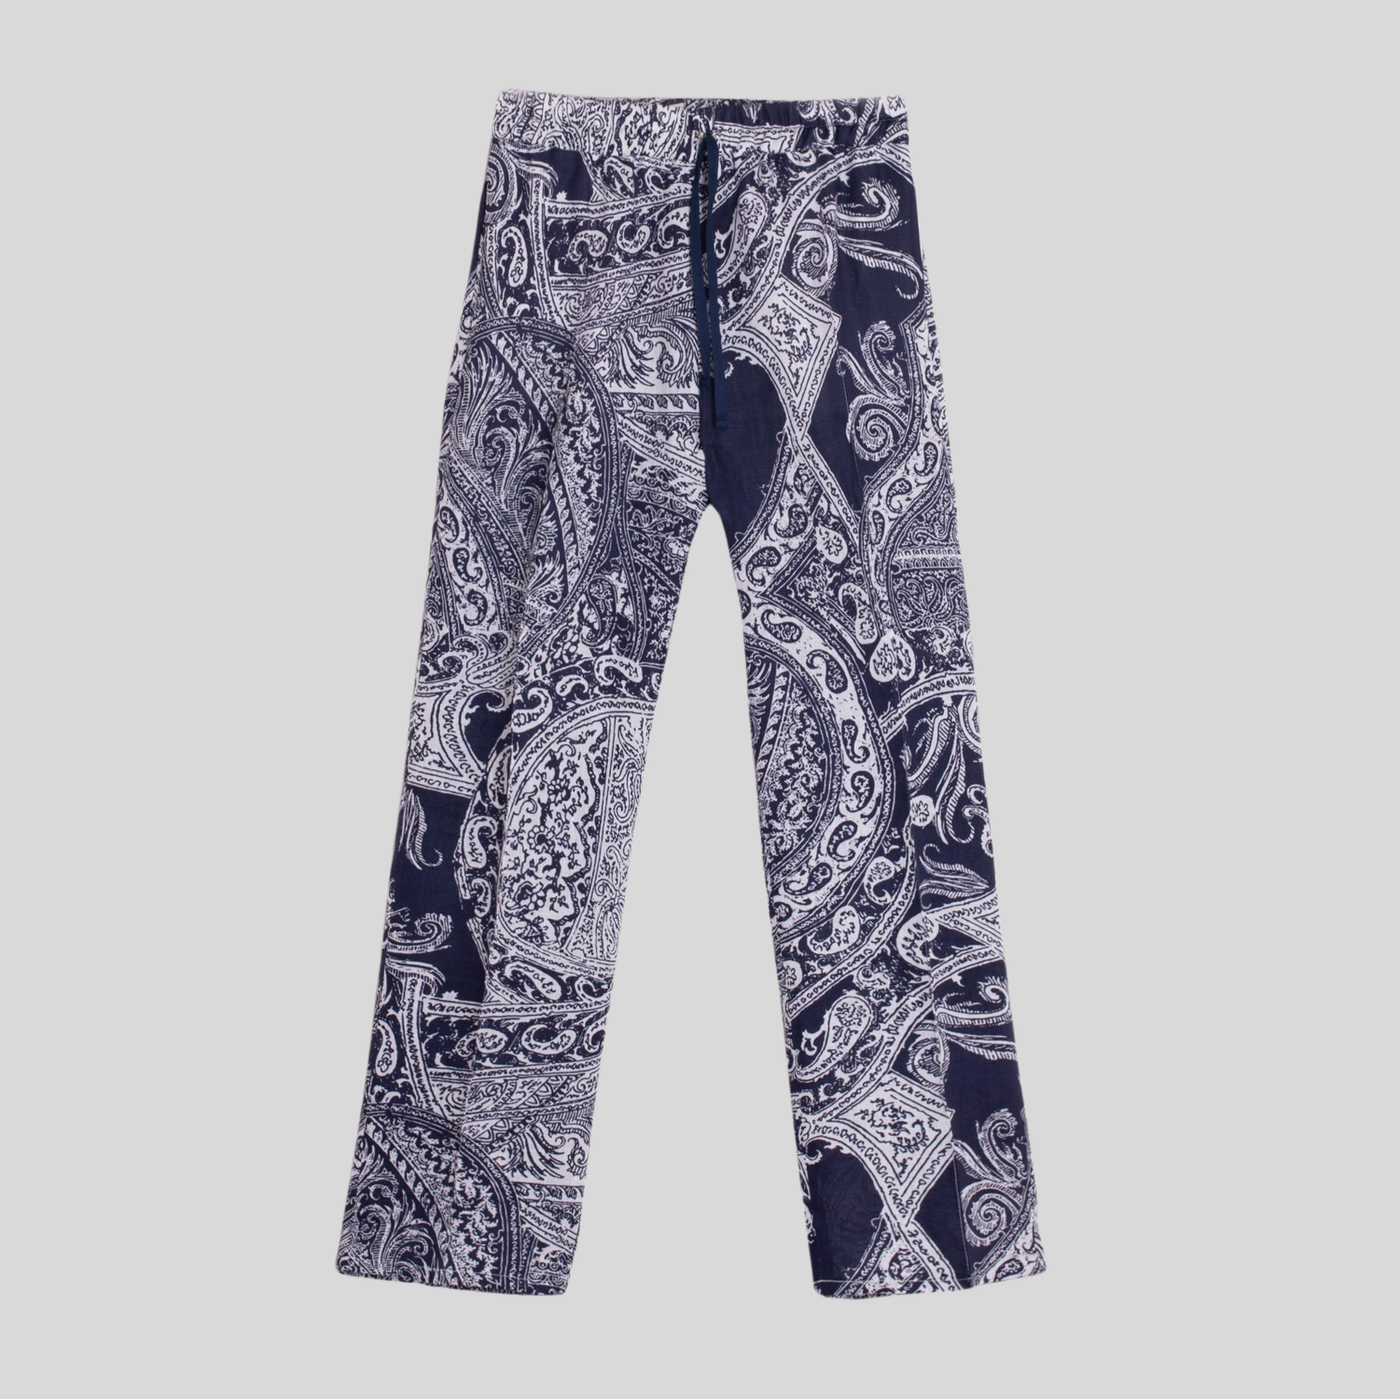 Gotstyle Fashion - Vilagallo Pants Paisley Print Linen Pants - Navy